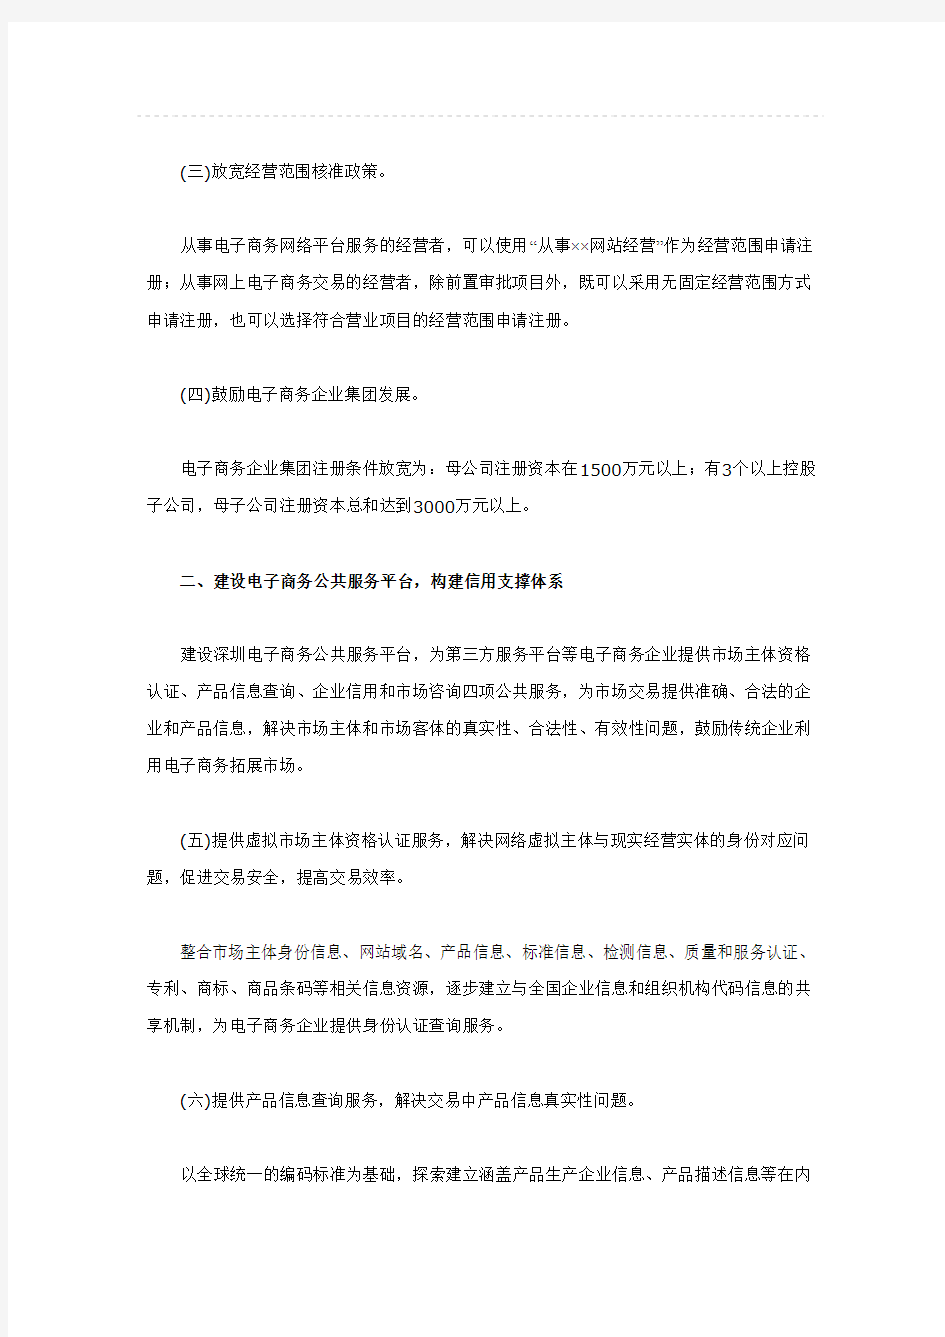 深圳电子商务优惠政策